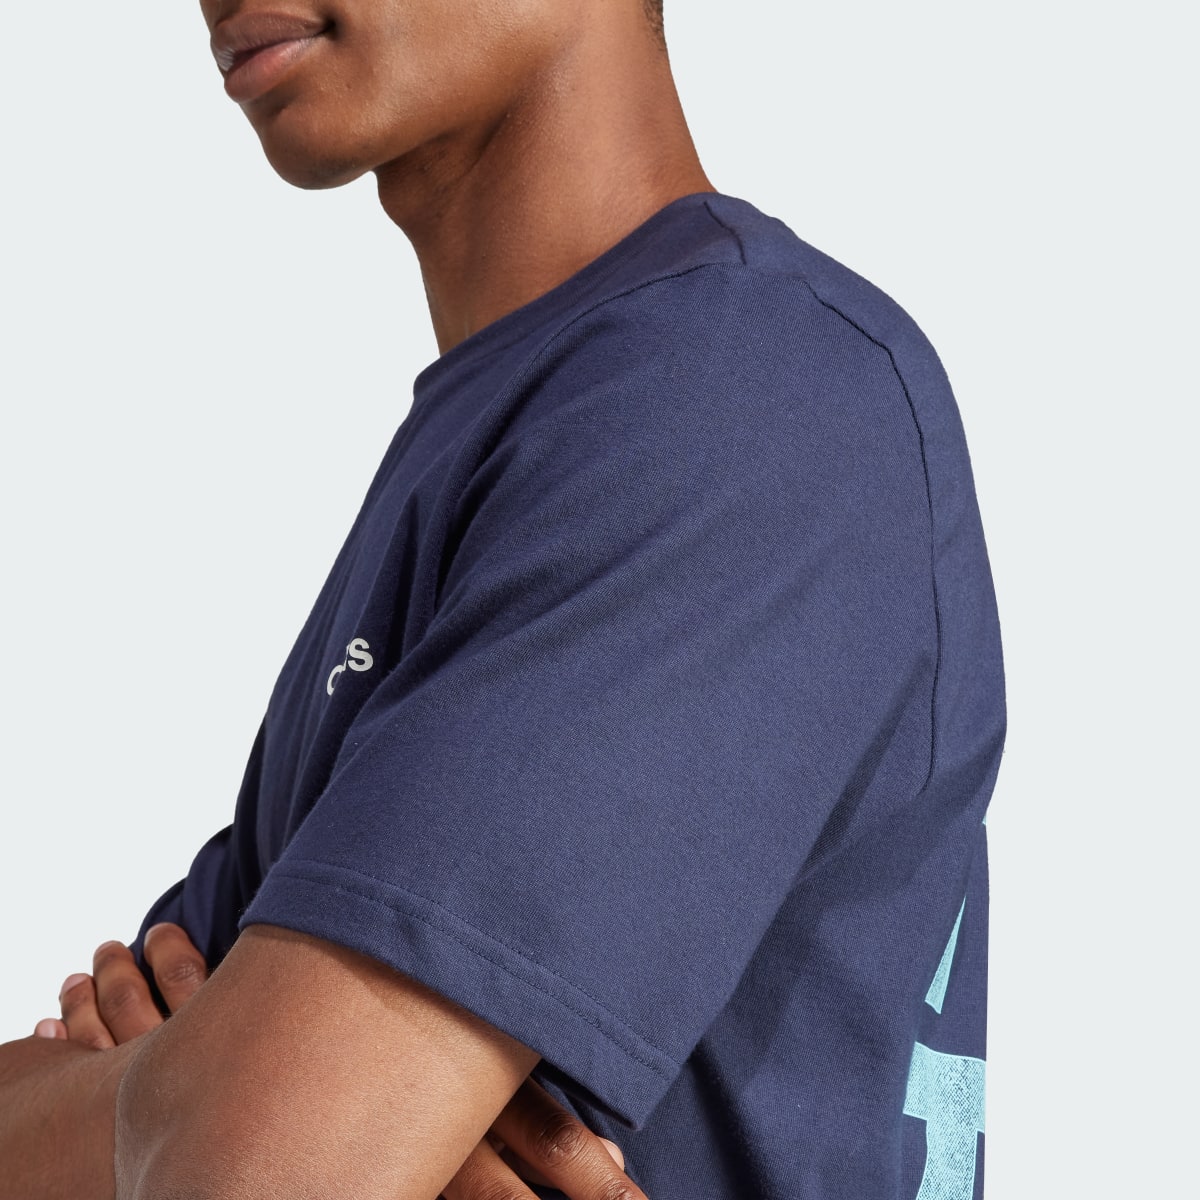 Adidas T-shirt Tiro Wordmark Graphic. 9